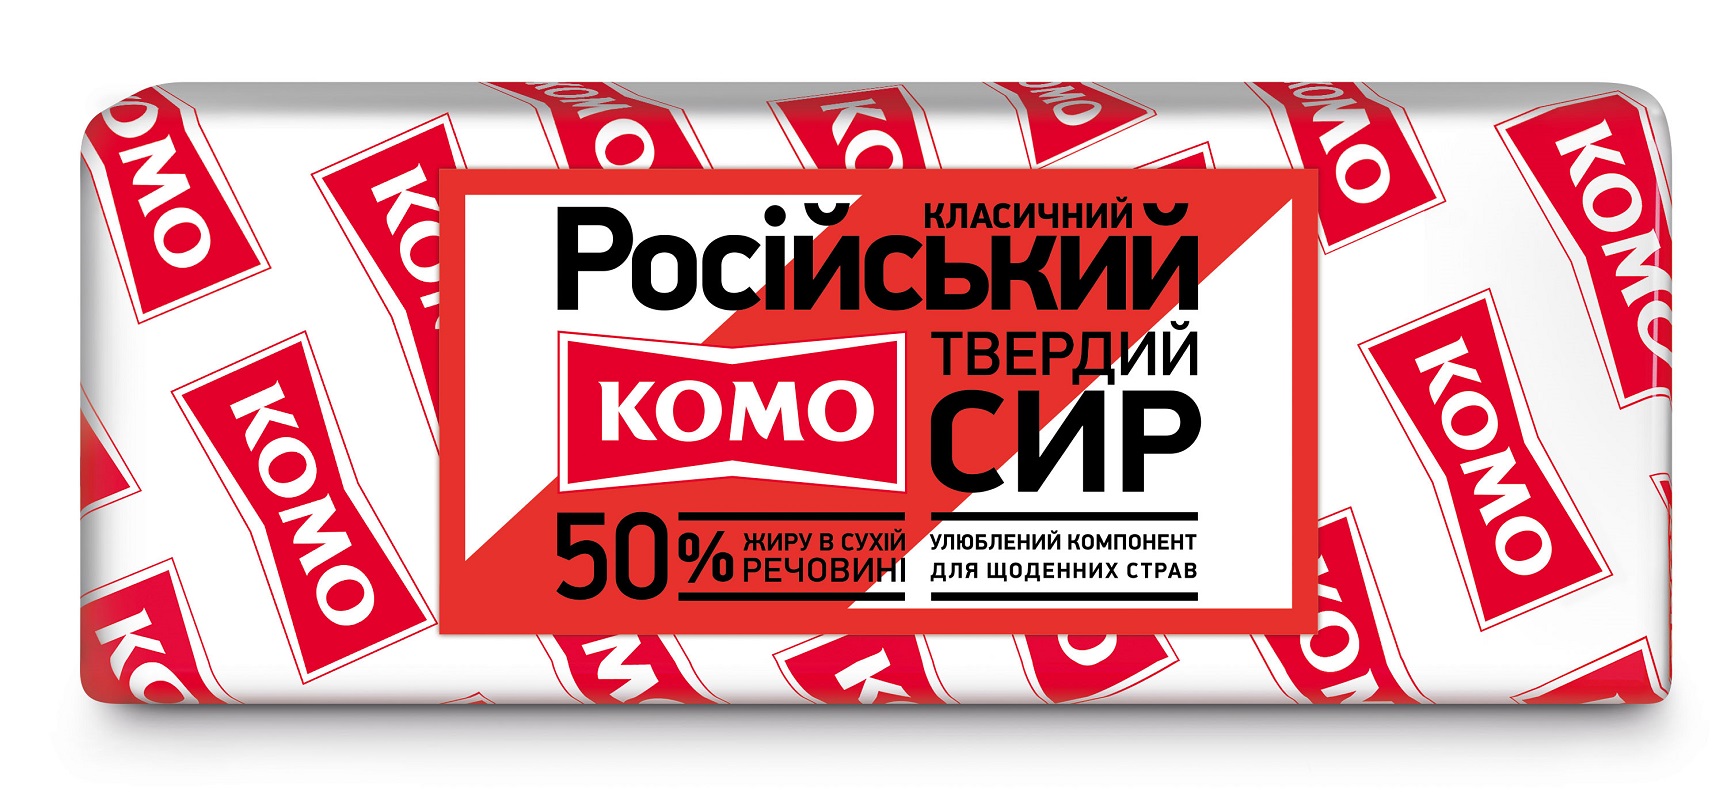 Російський класичний 50% брус ТМ Комо